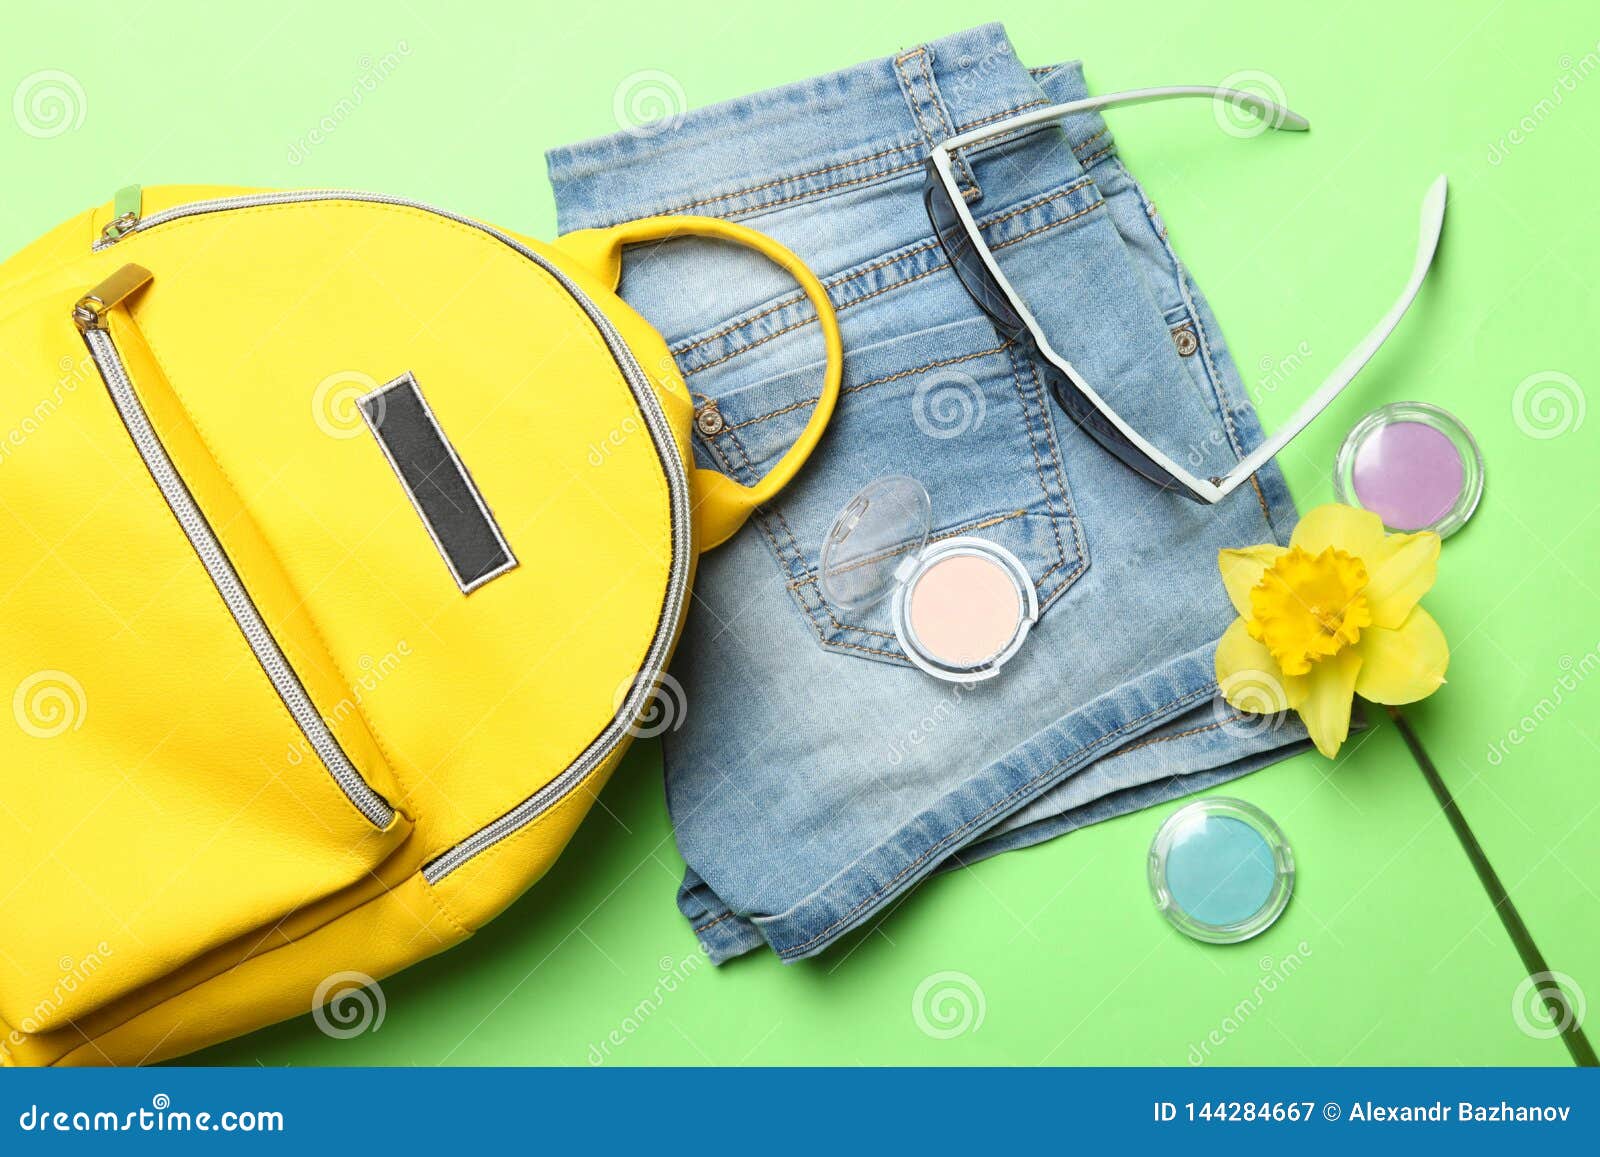 Stylish Yellow Backpack, Shorts, Sunglasses Stock Image - Image of ...